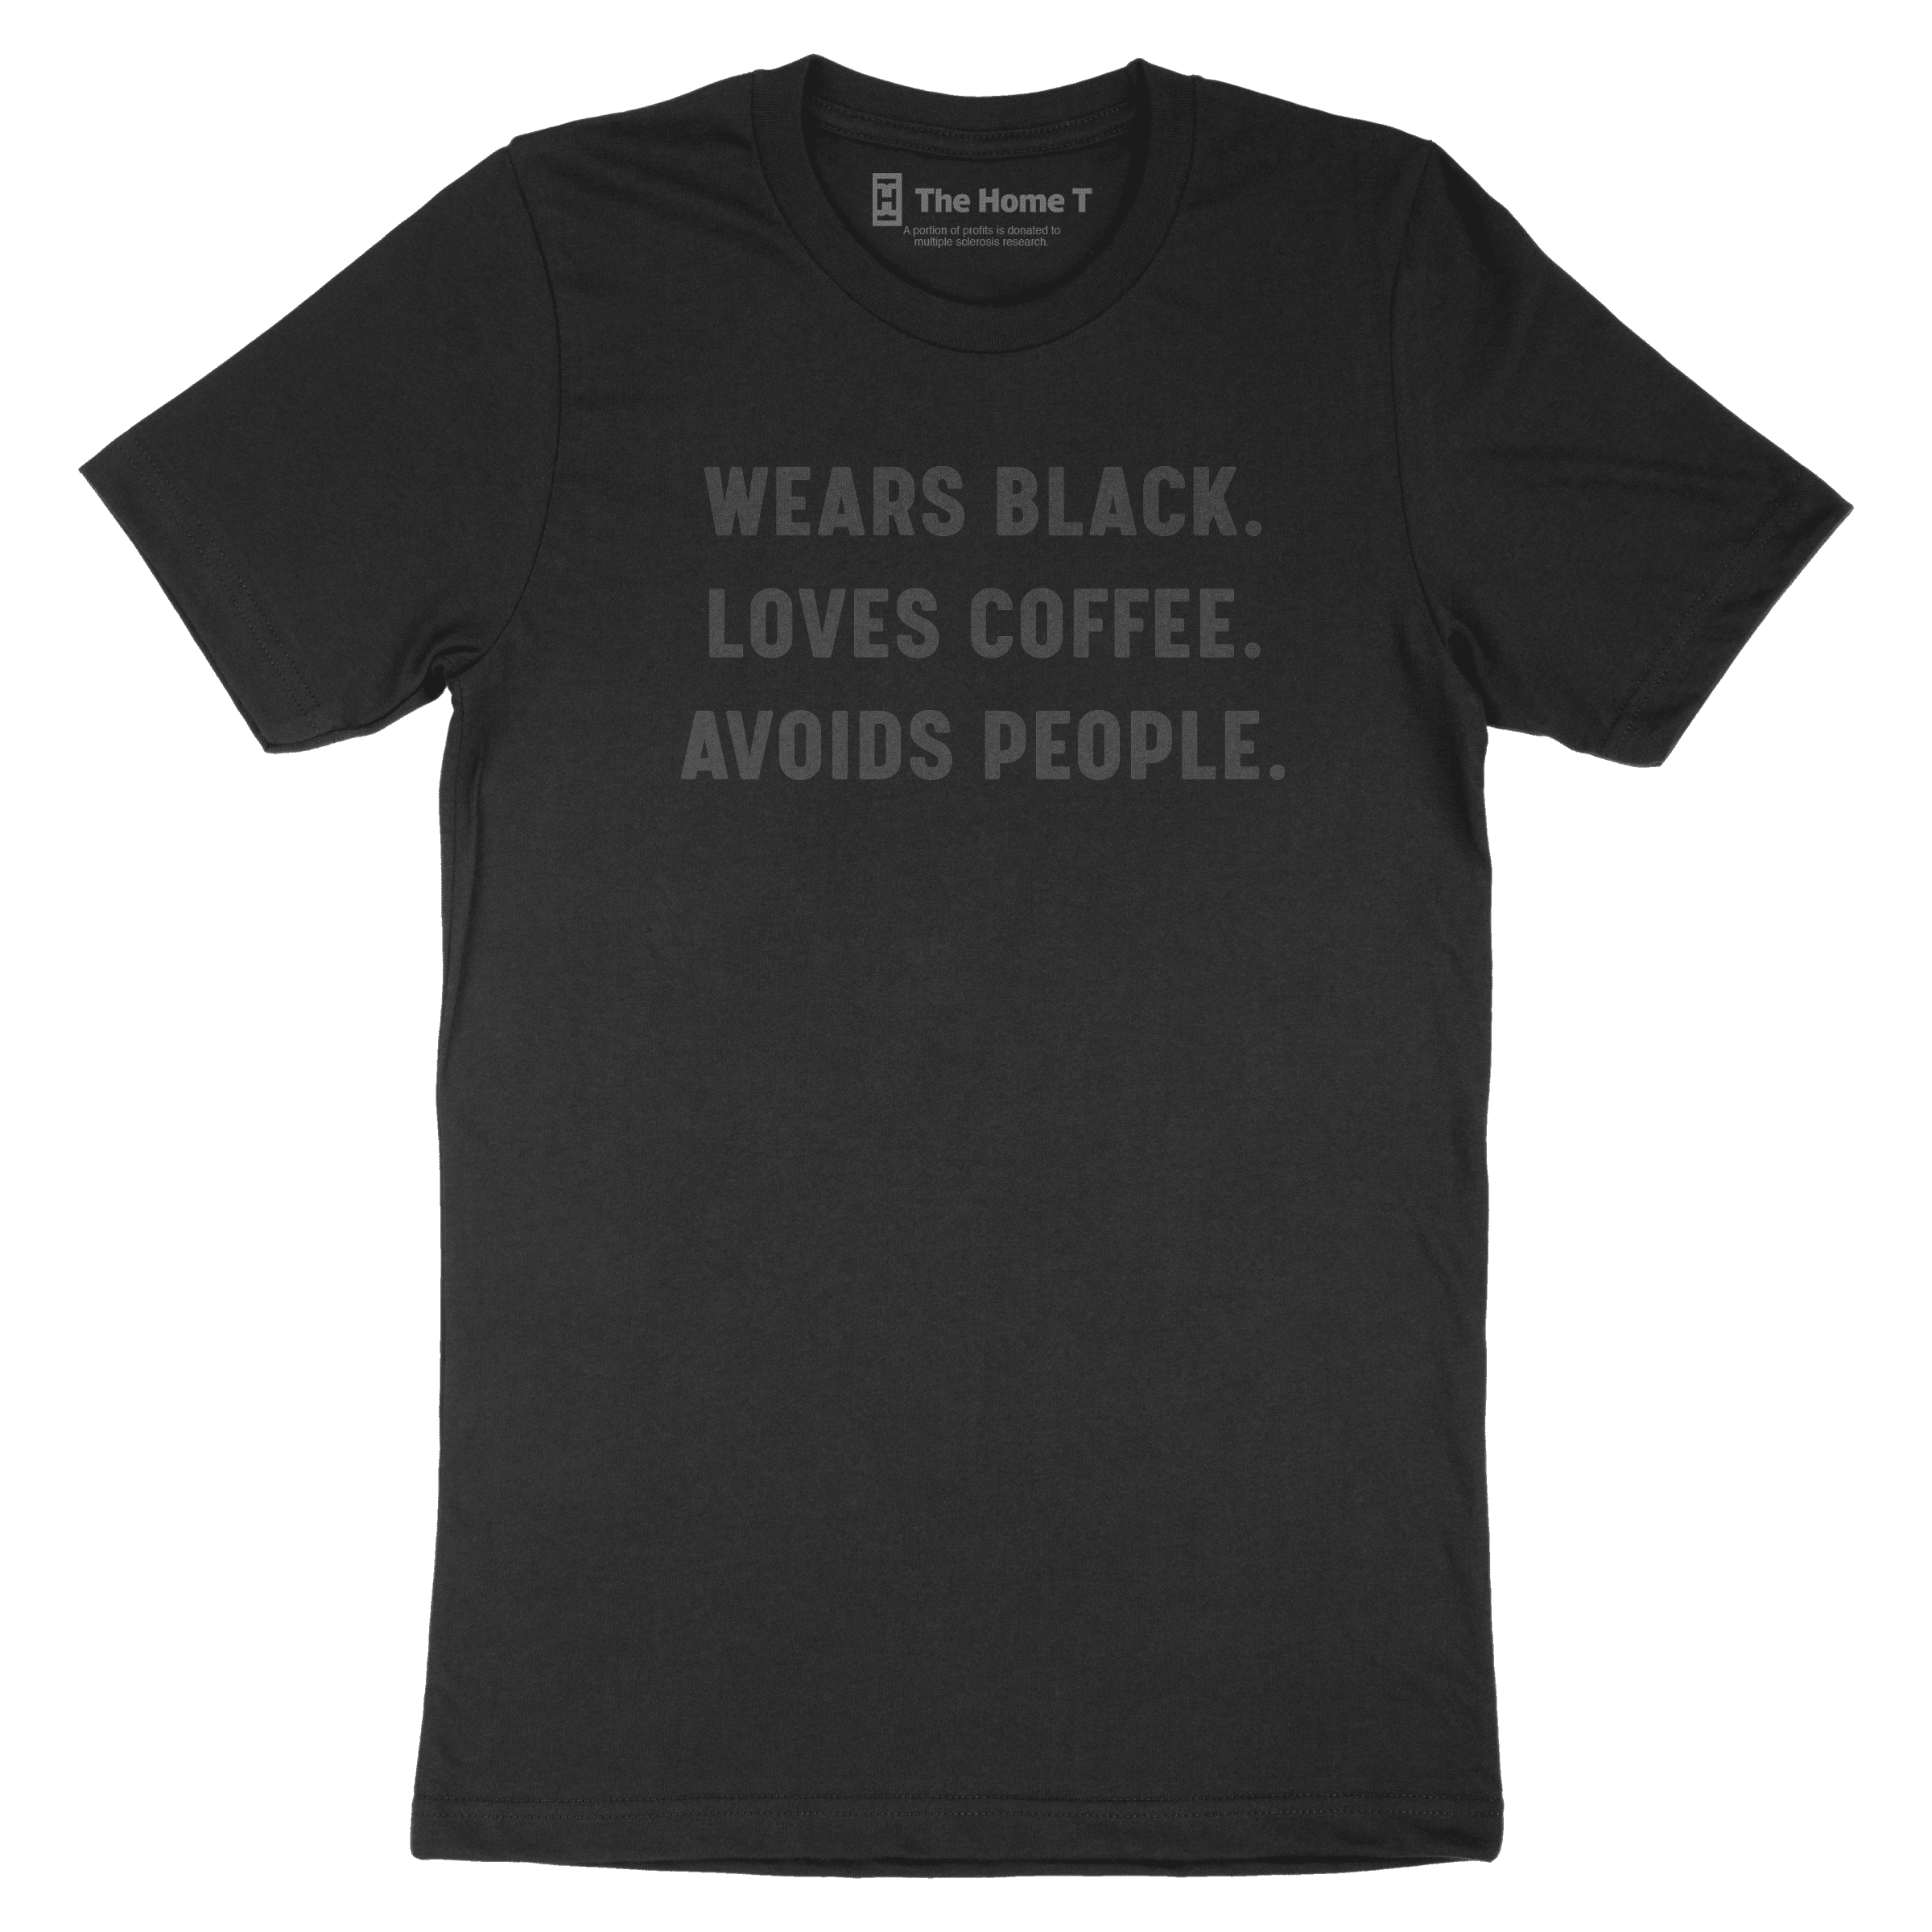 WEARS BLACK. LOVES COFFEE - BLACK ON BLACK.